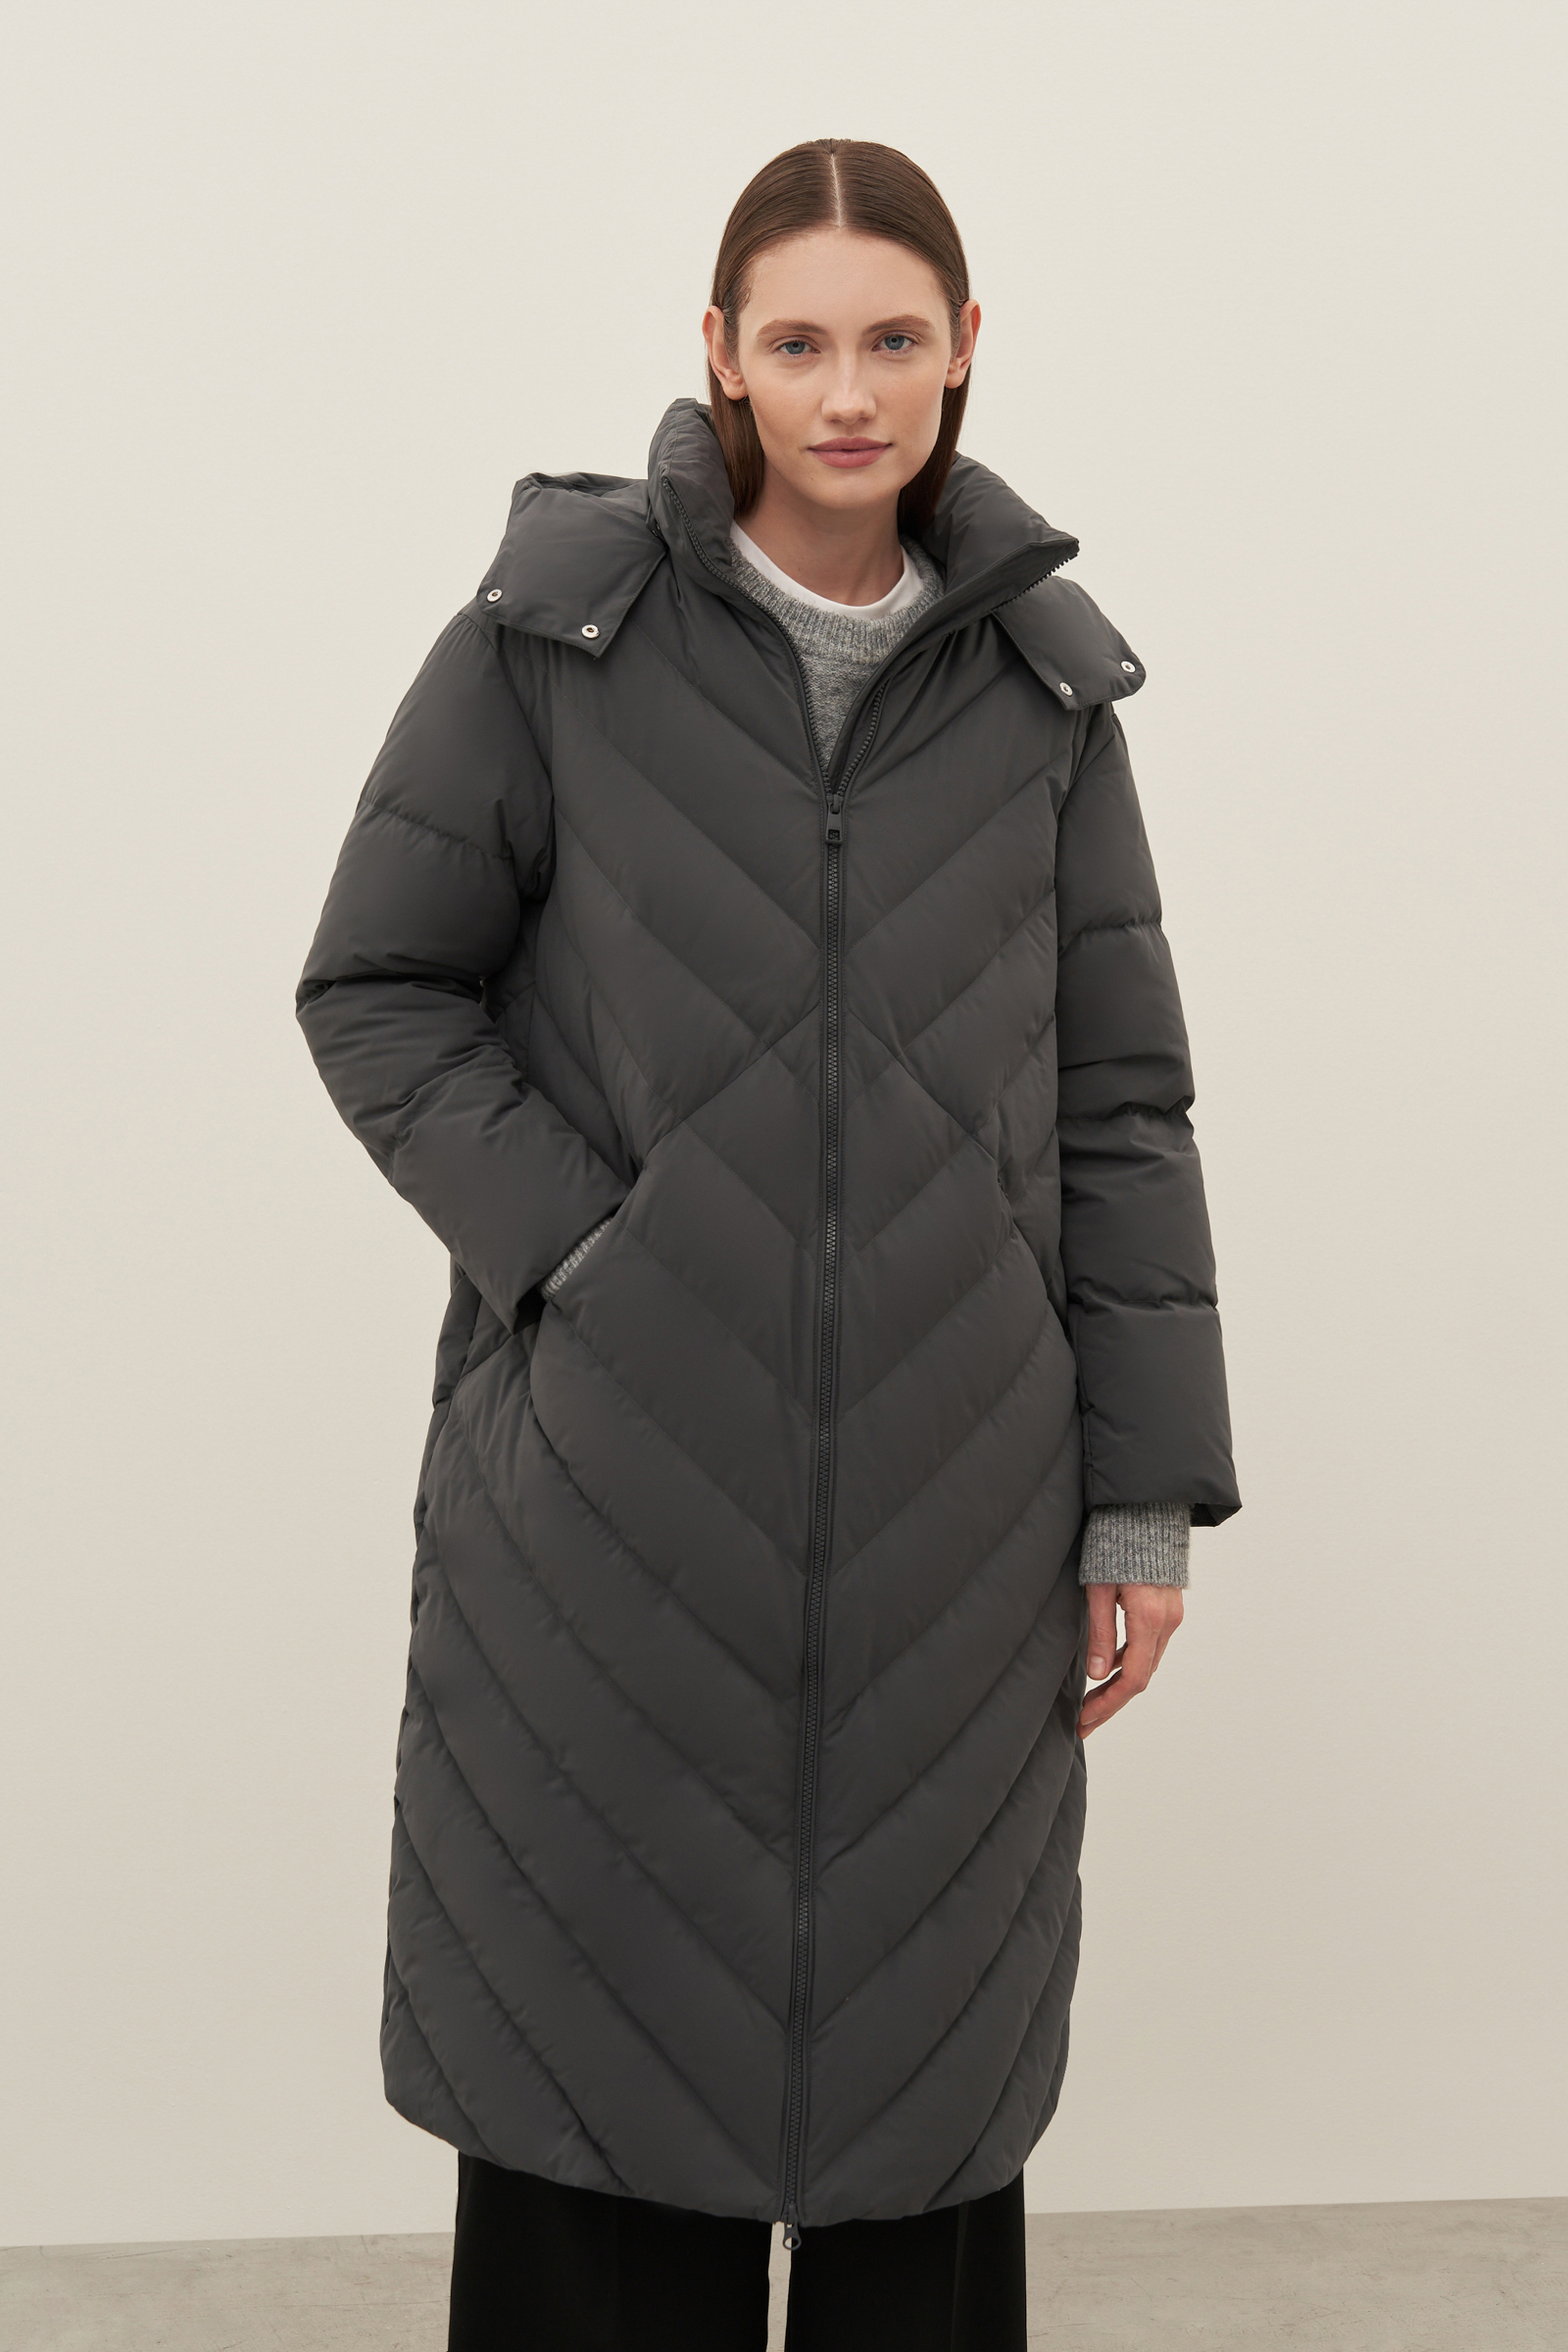 Пуховик-пальто женский Finn Flare FAD110101 серый L